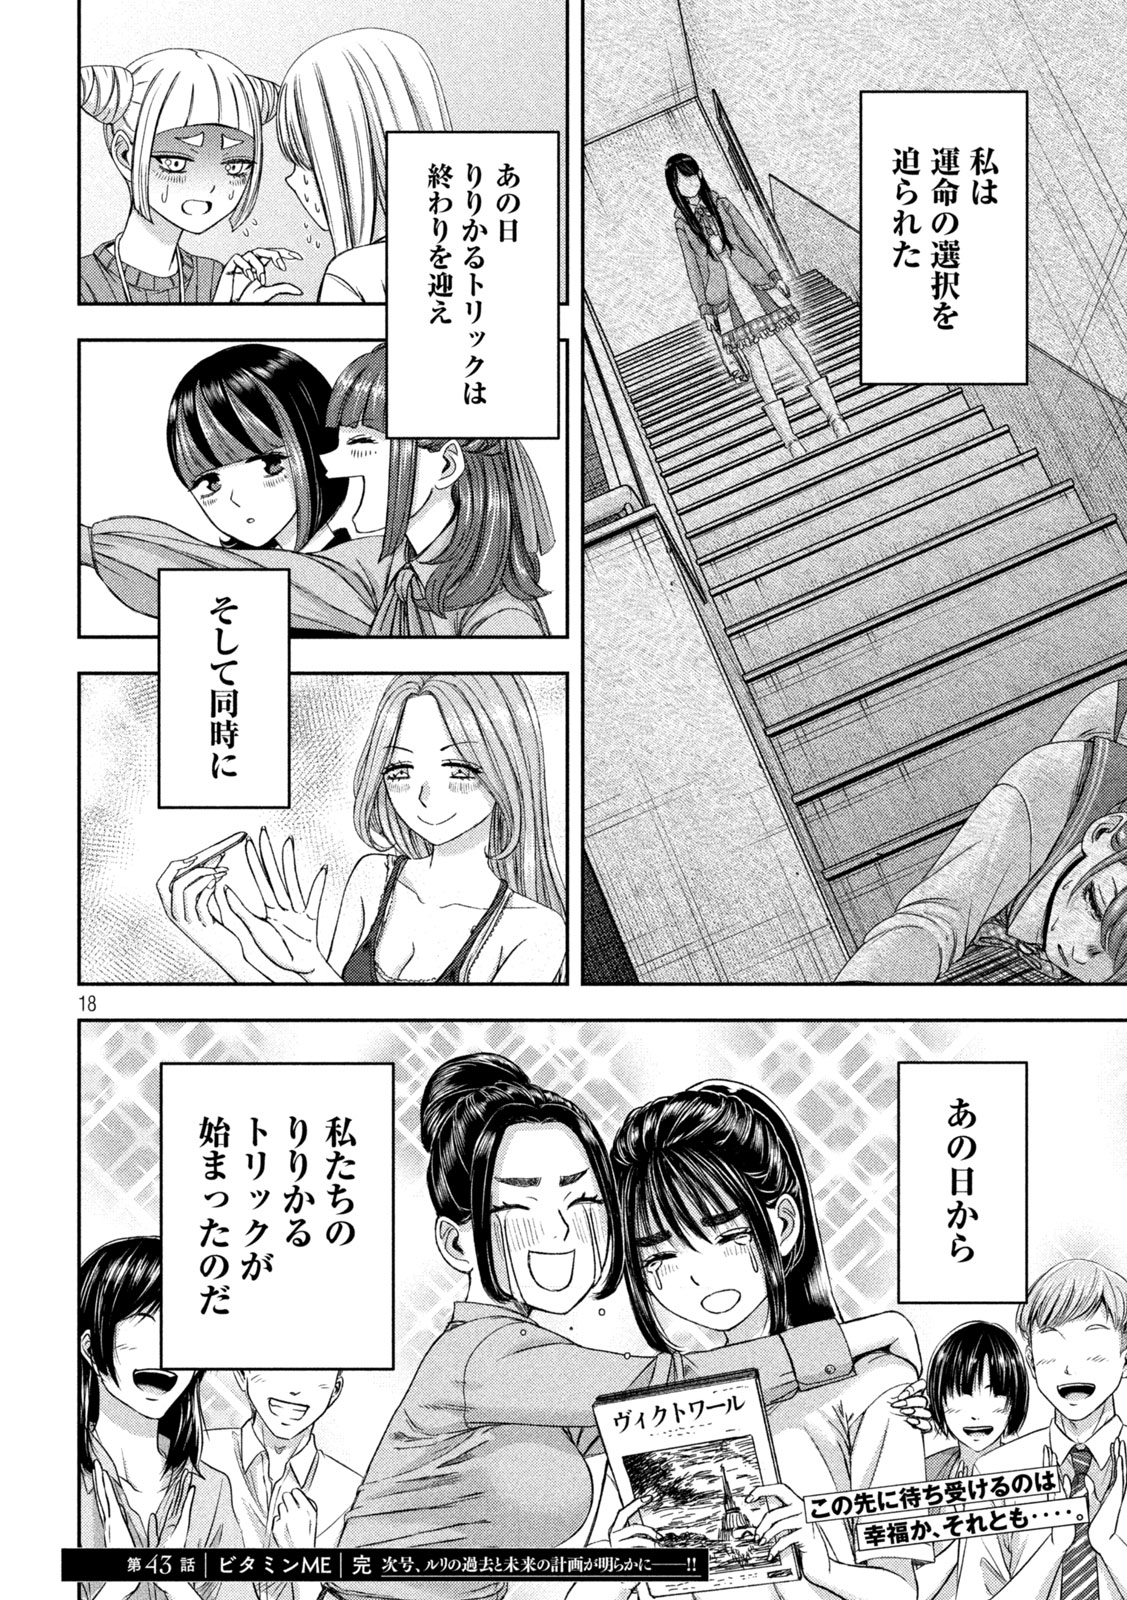 Watashi no Arika - Chapter 43 - Page 18